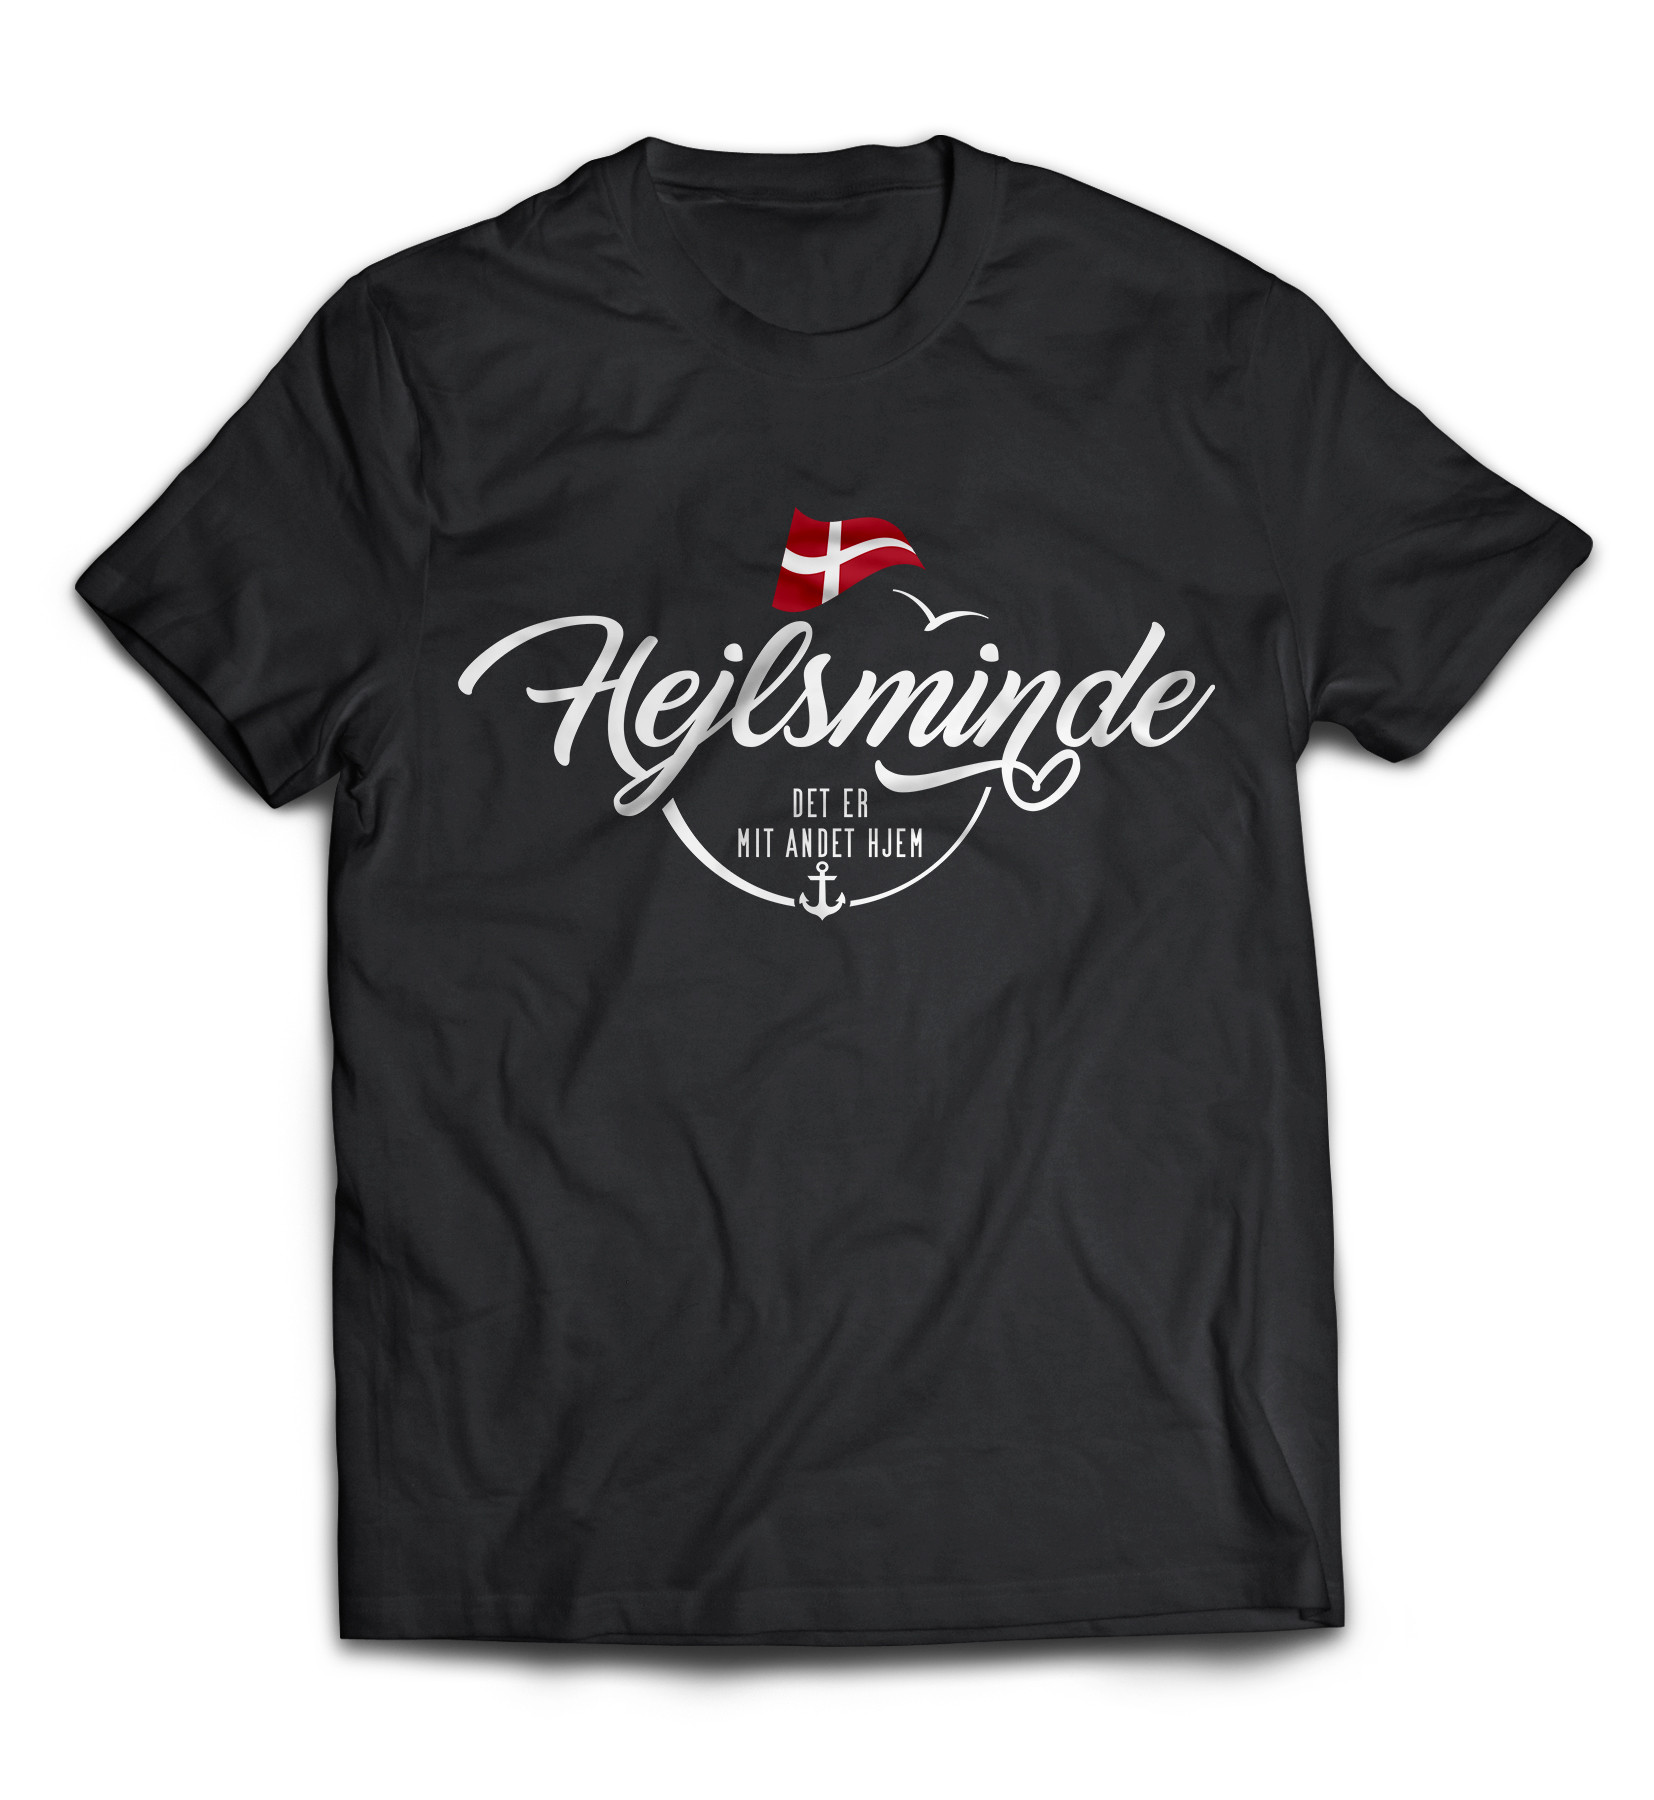 Dänemark - Meine zweite Heimat - T-Shirt "Hejlsminde"